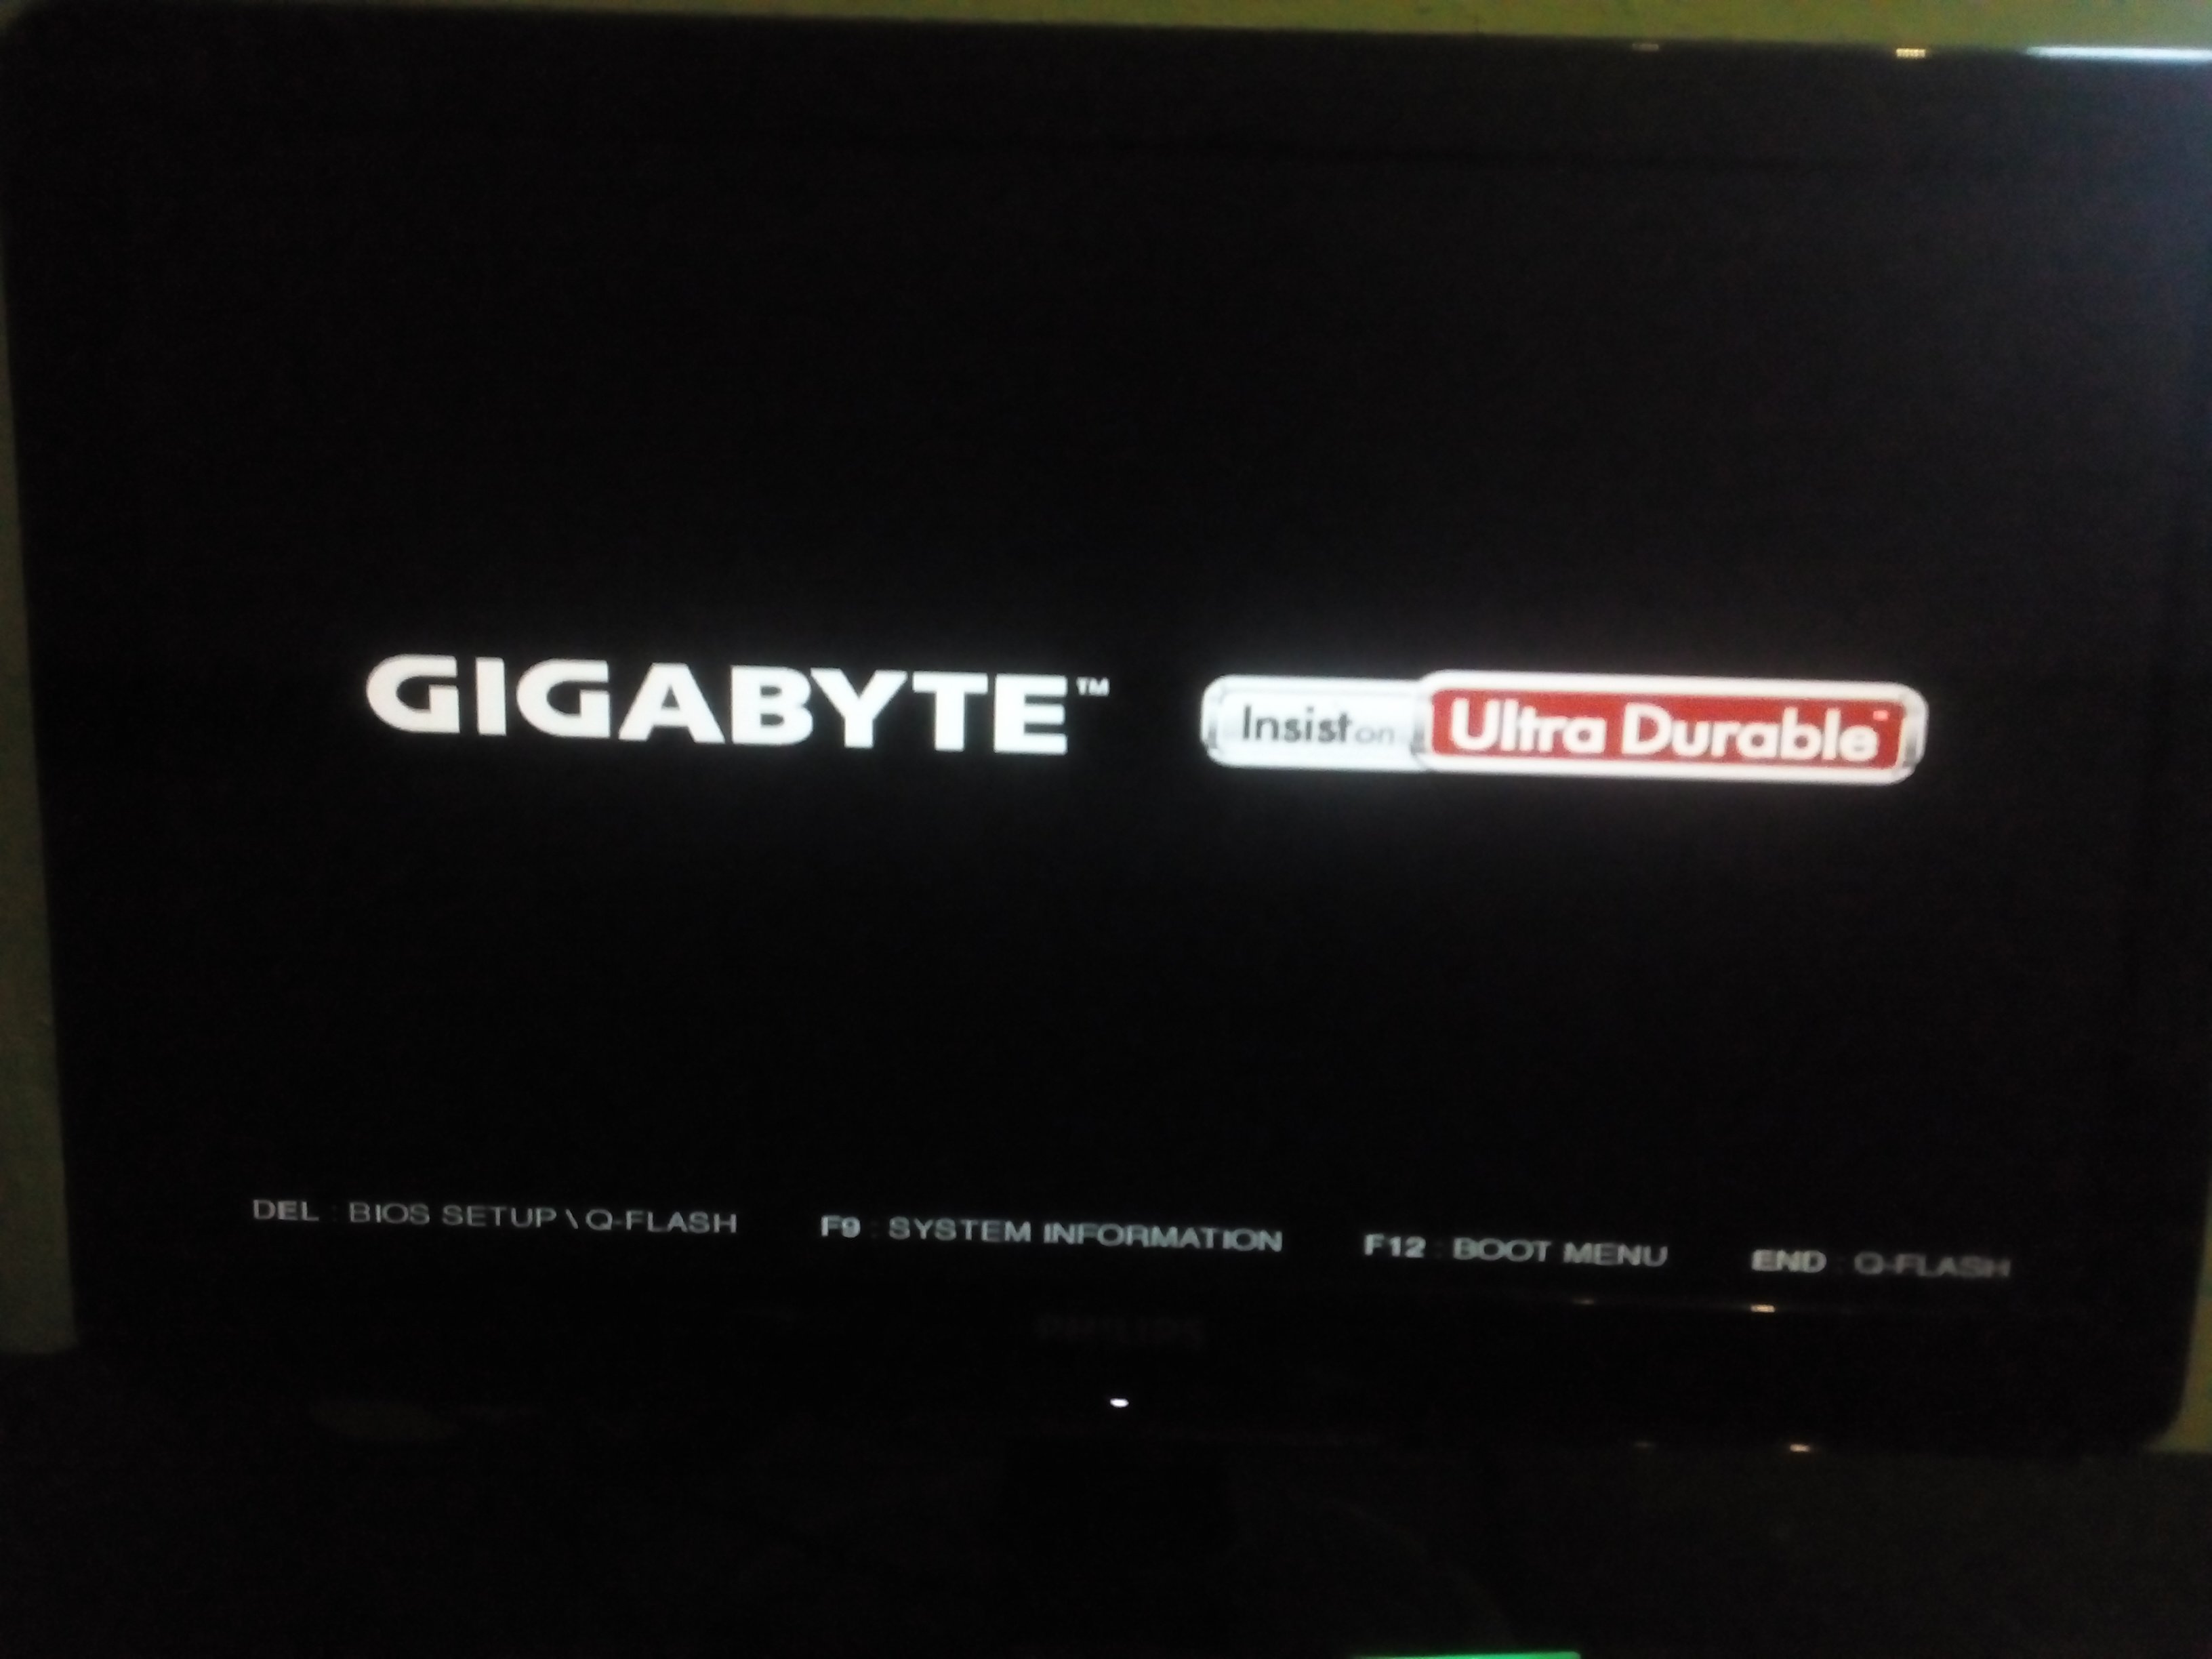 Gigabyte черный экран. Gigabyte insist on Ultra. Экран загрузки материнской платы Gigabyte. Экран загрузки Gigabyte Ultra durable. Загрузочный экран материнской платы Gigabyte.